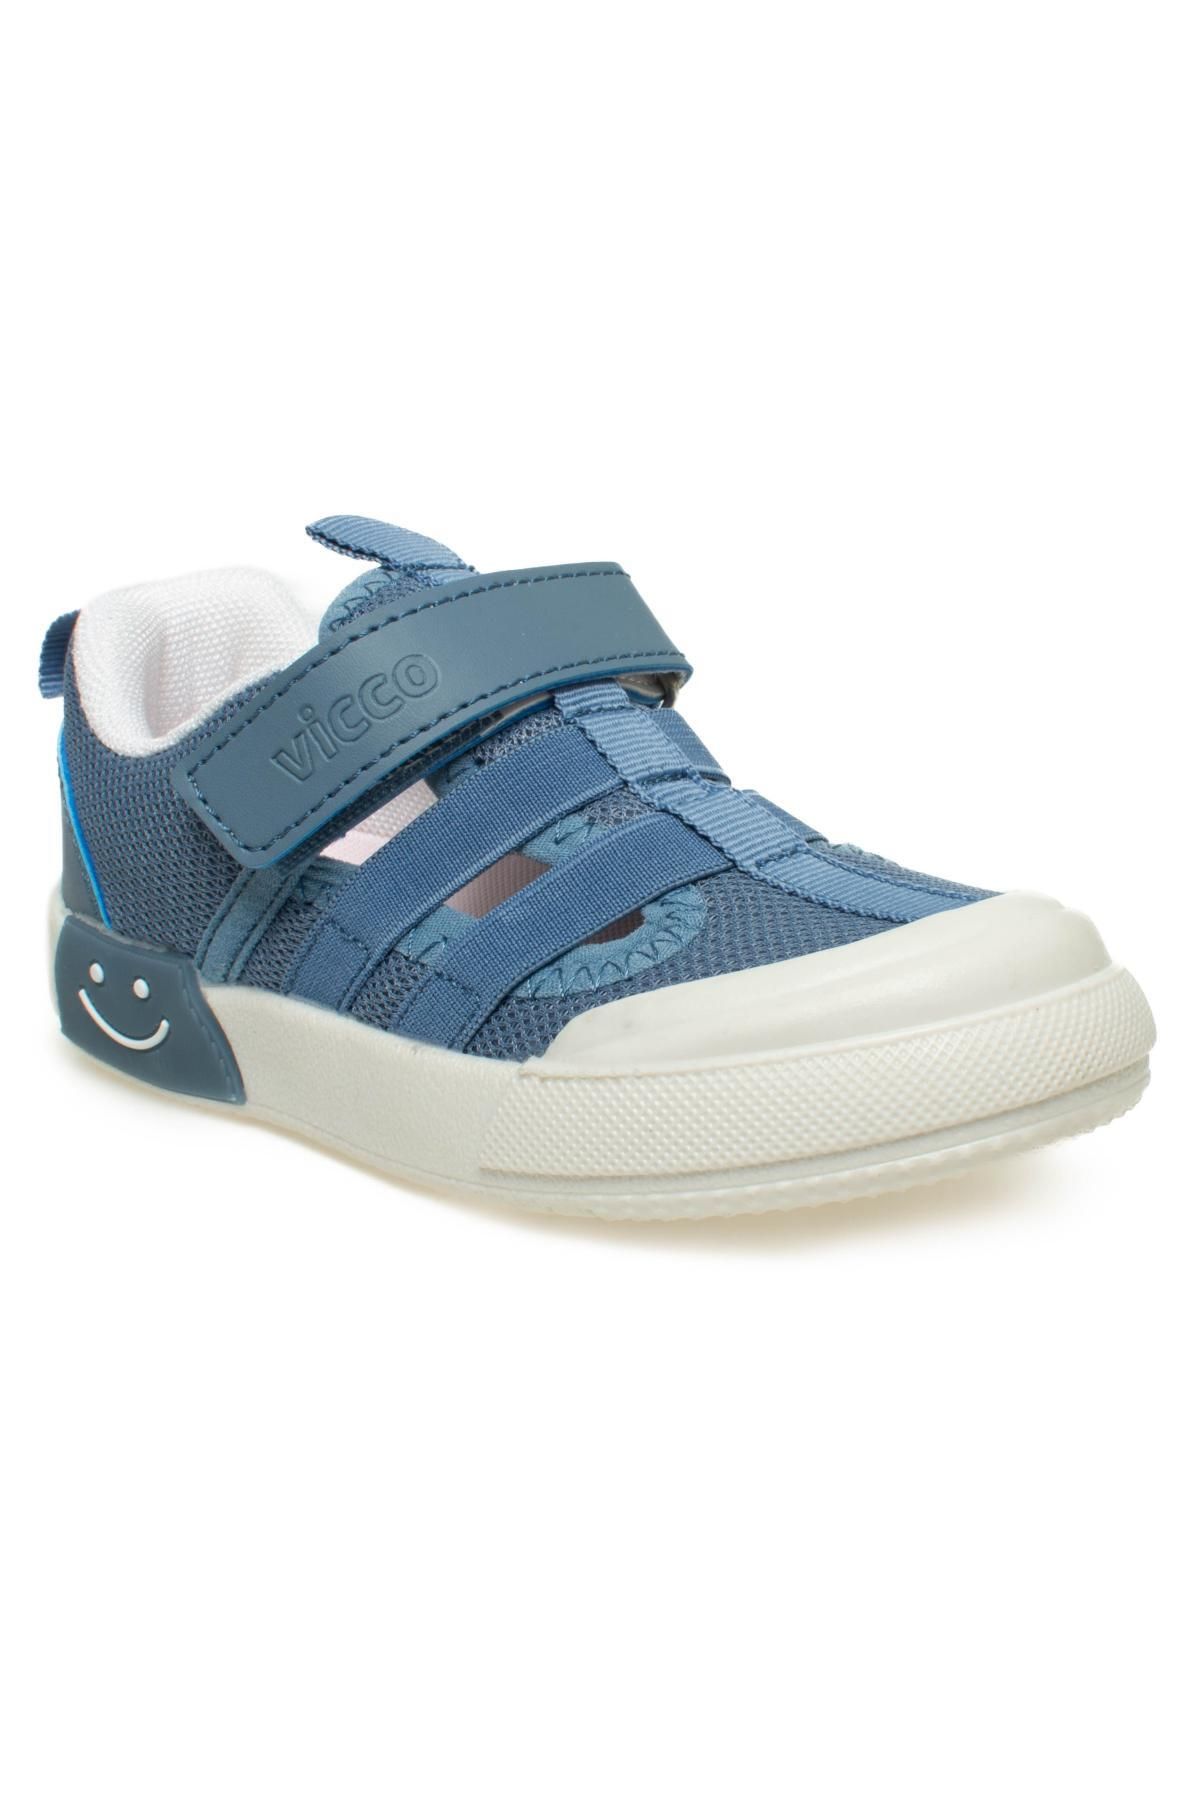 Vicco 346.P24Y145 Momo Patik Işıklı Mavi Çocuk Ayakkabı